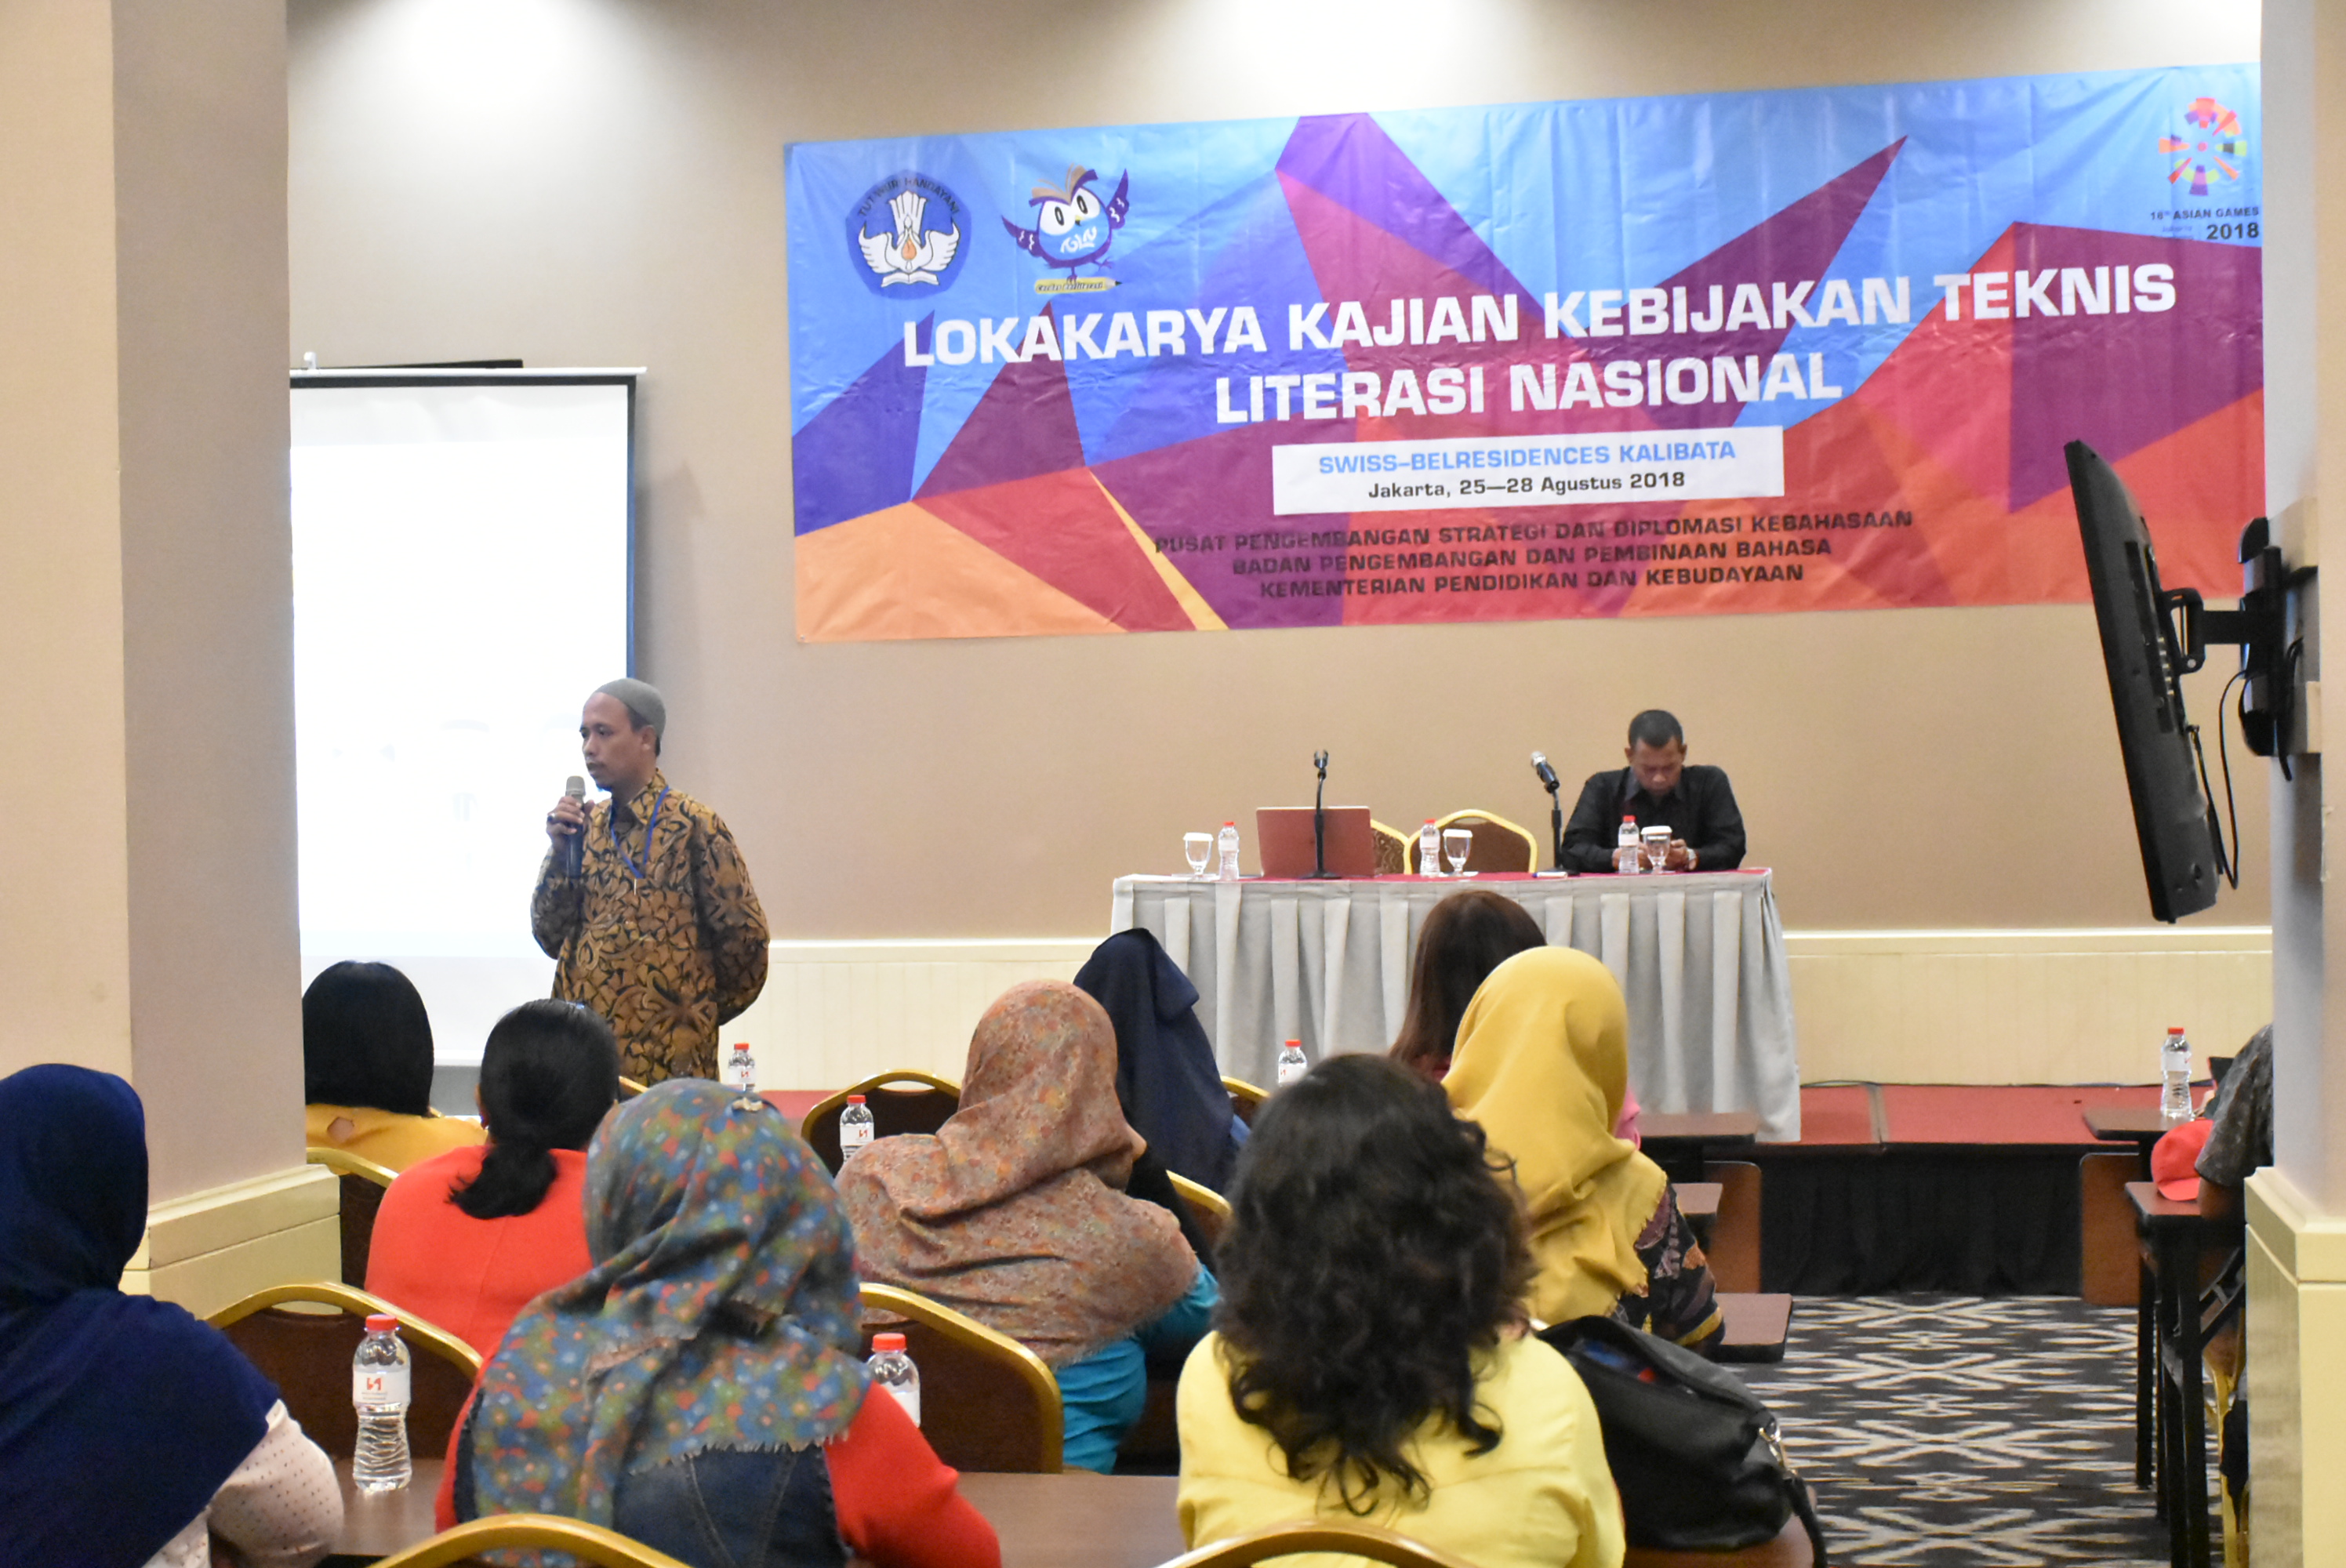 Lokakarya Kajian Kebijakan Teknis Literasi Nasional